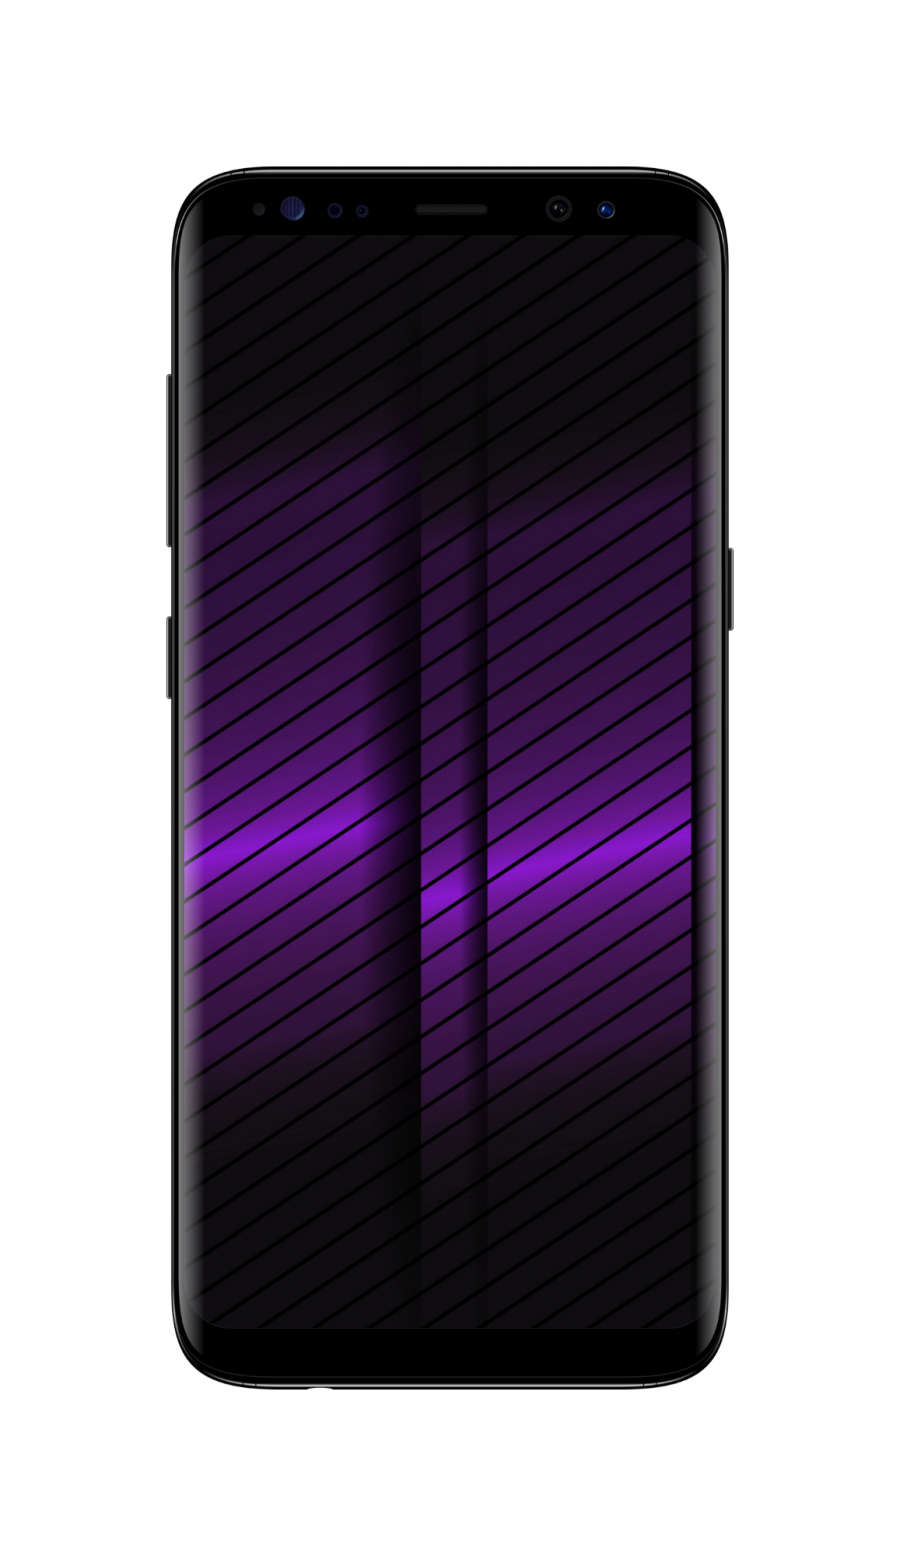 2400×1080 黑色 紫色 条纹 抽象 手机壁纸图片